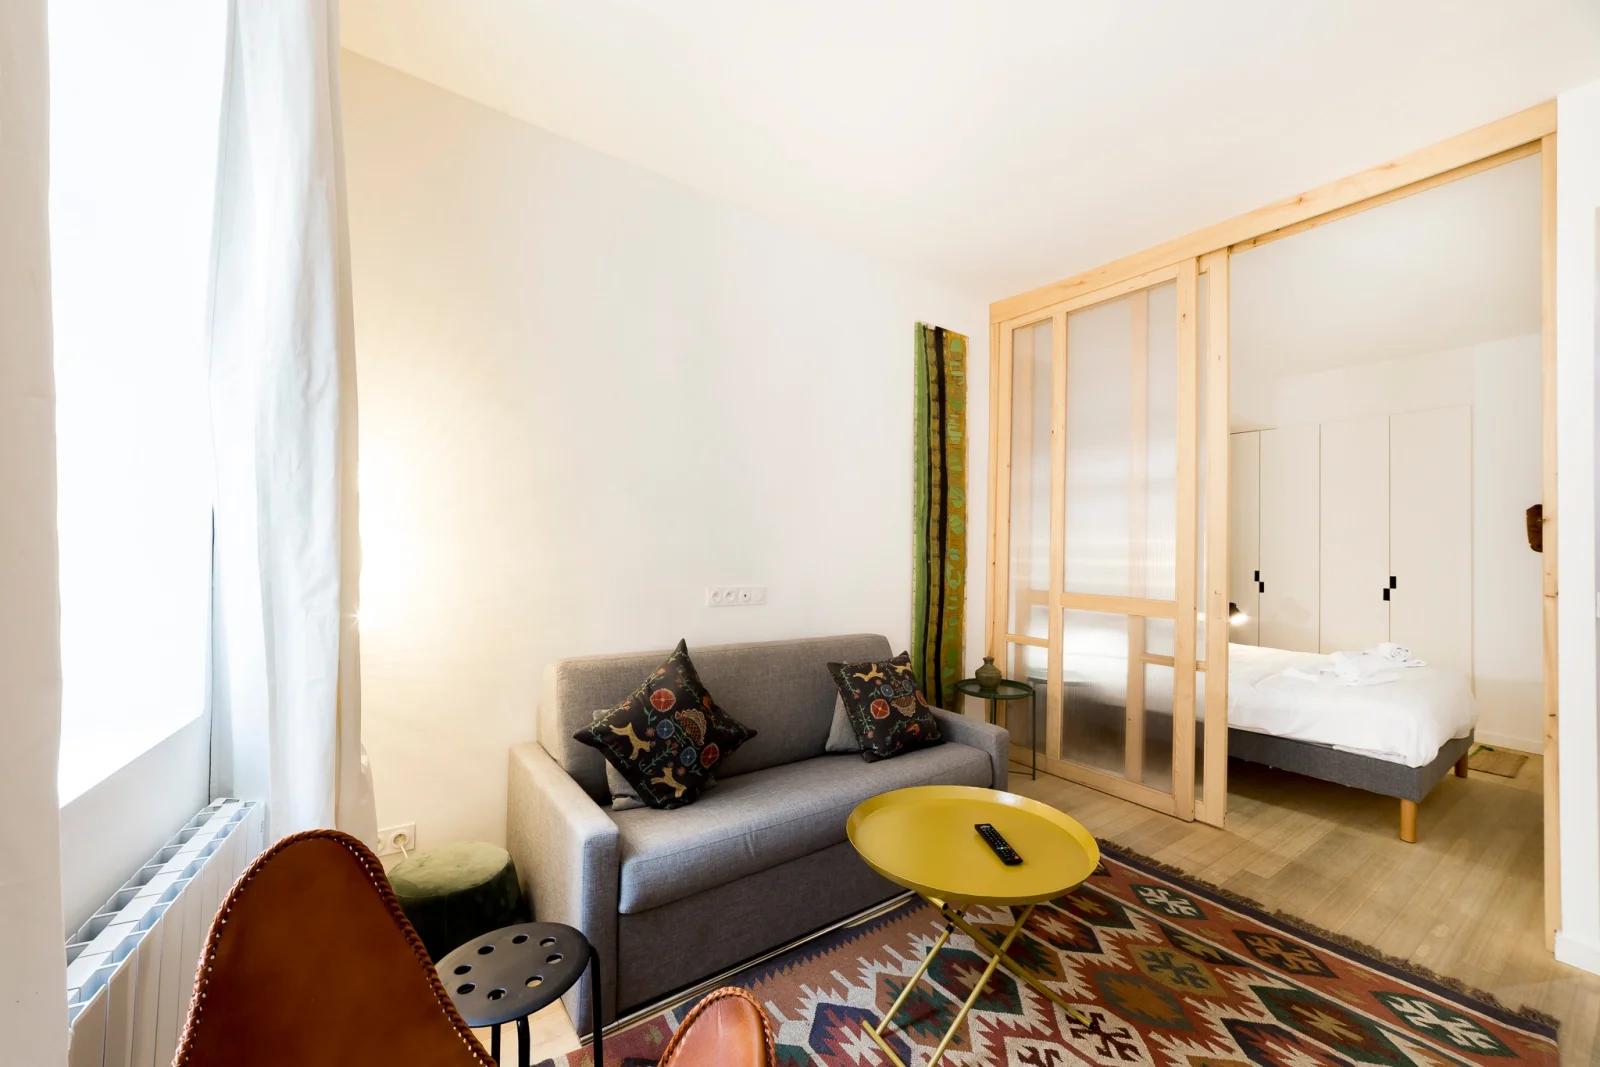 Dormitorio dentro L'Ethnic Ambience - Un lugar confortable en el Vieux Lyon - 1